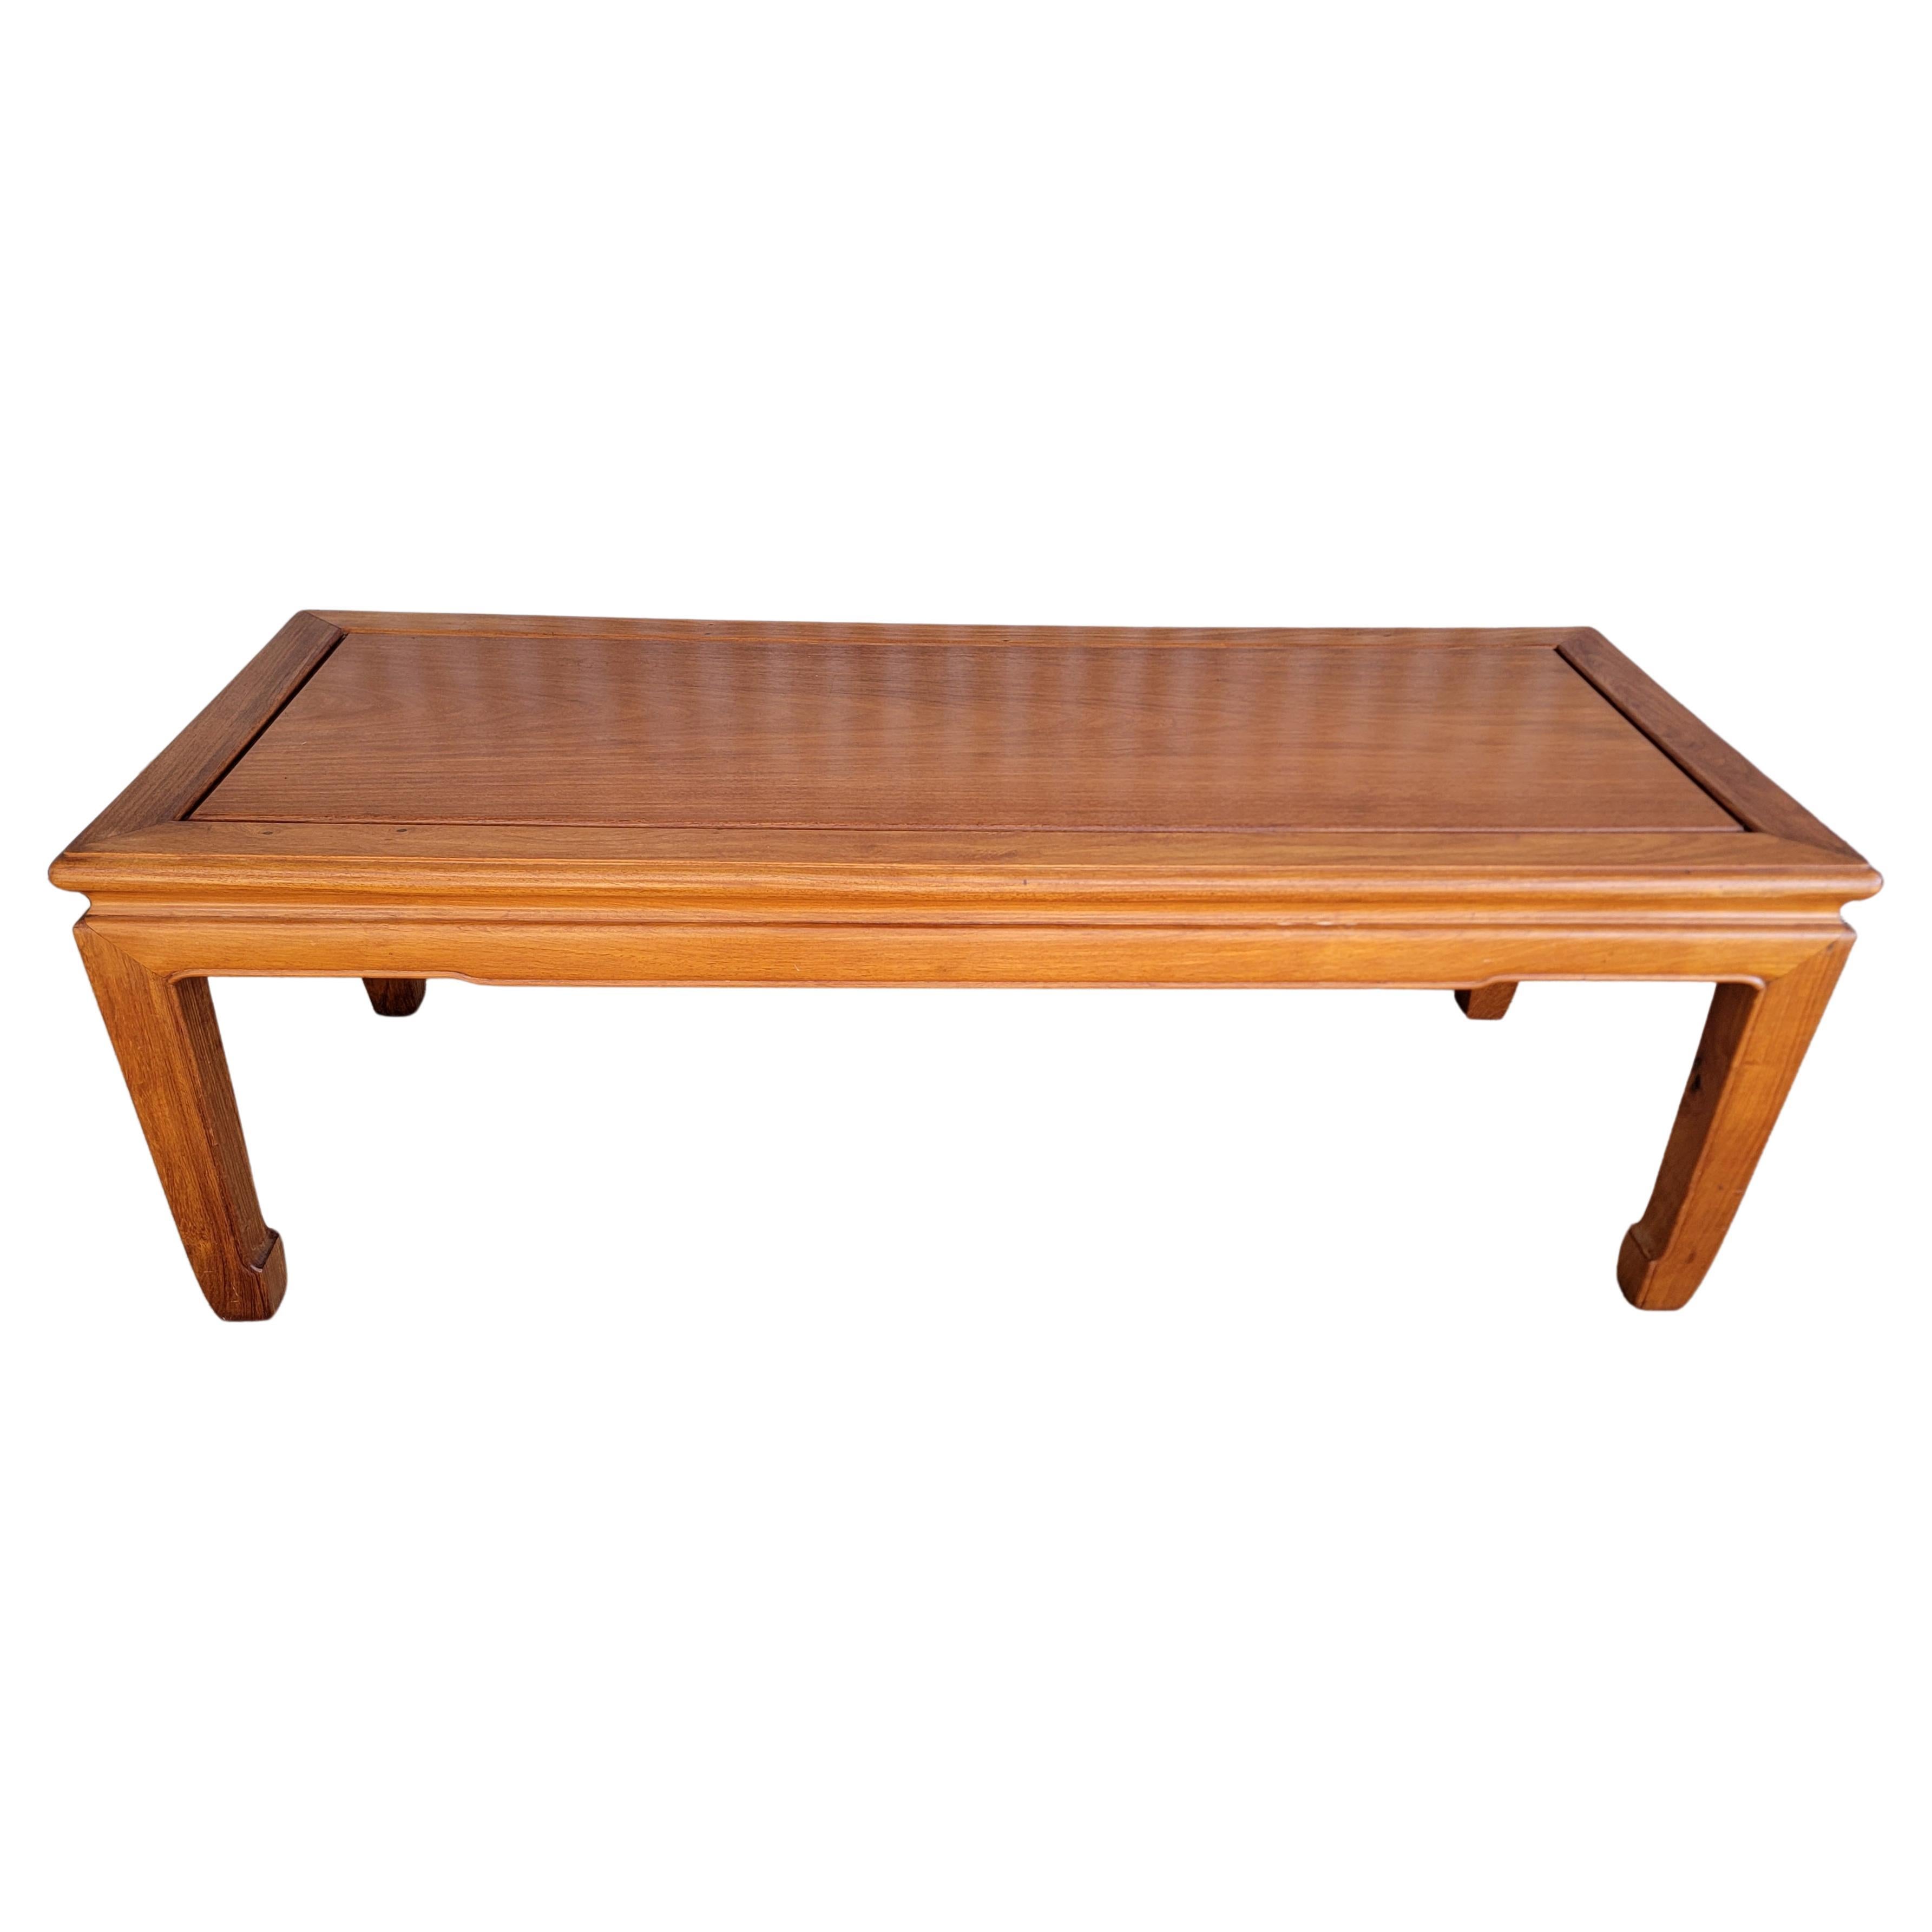 Table basse asiatique en bois dur de style Ming